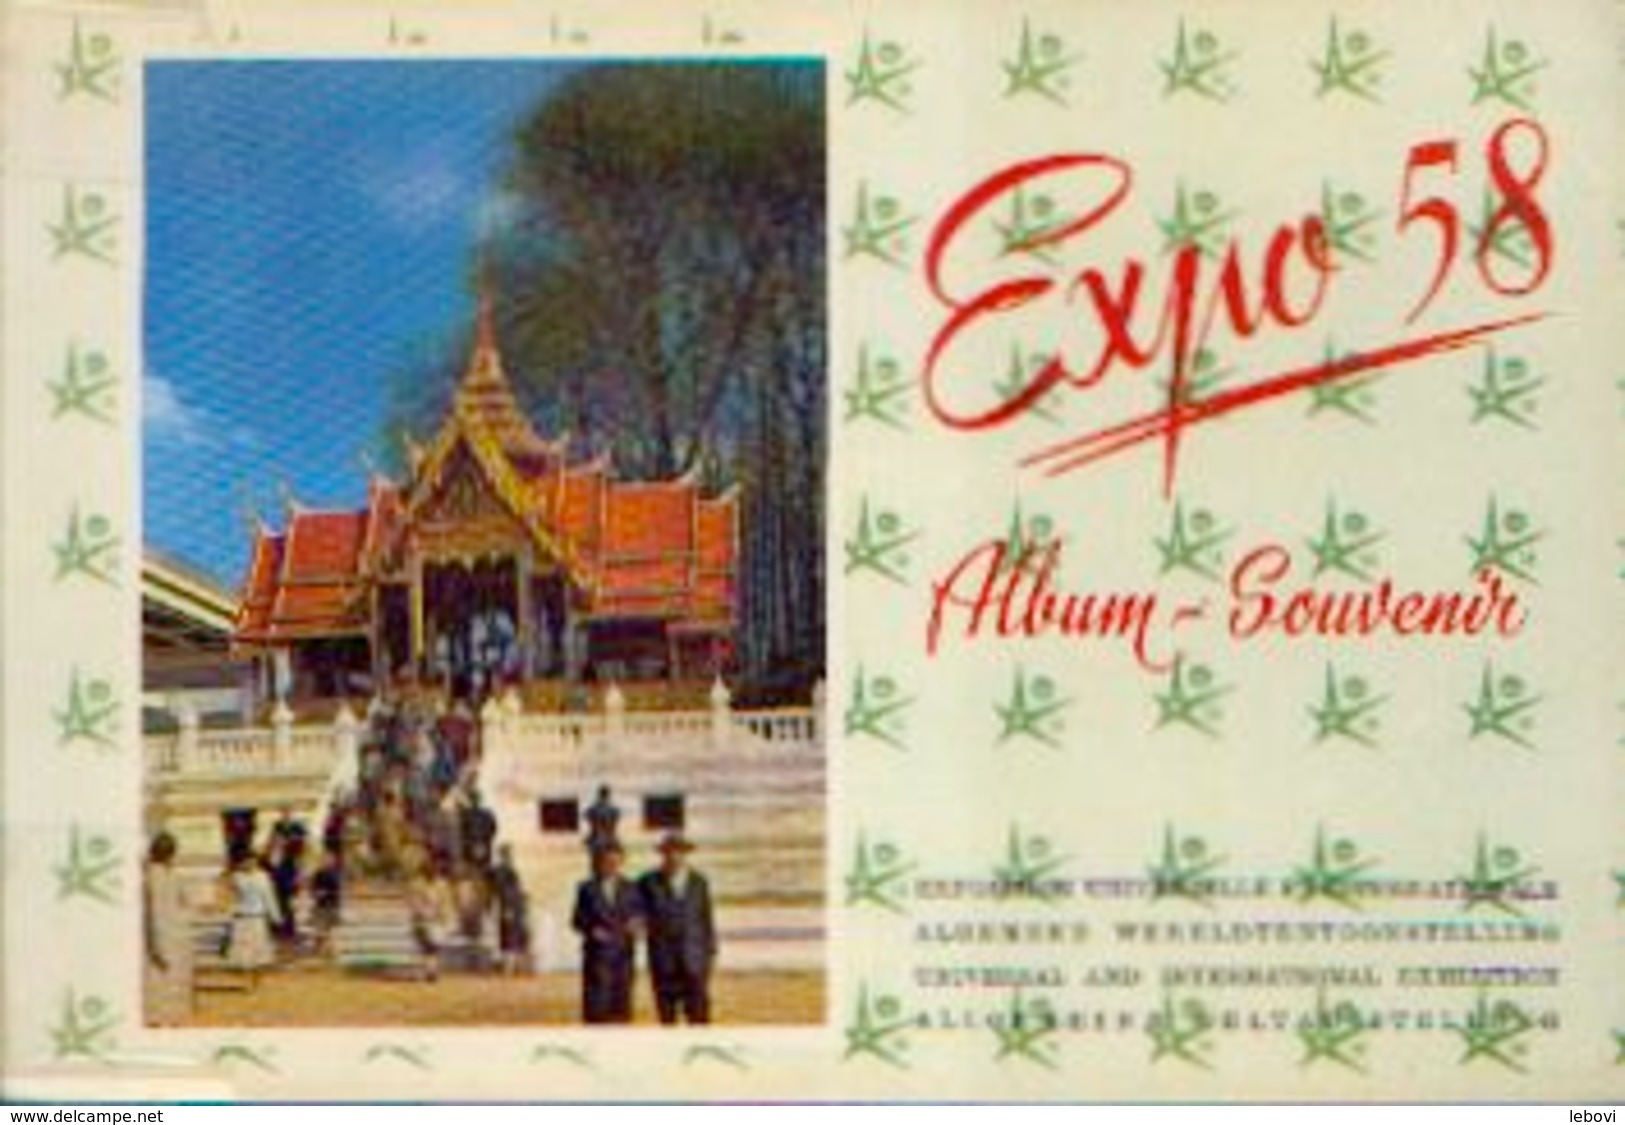 « EXPO 58 – Album - Souvenir» - Ets Gén. D’imprimerie, Bxl 1958 - Belgium